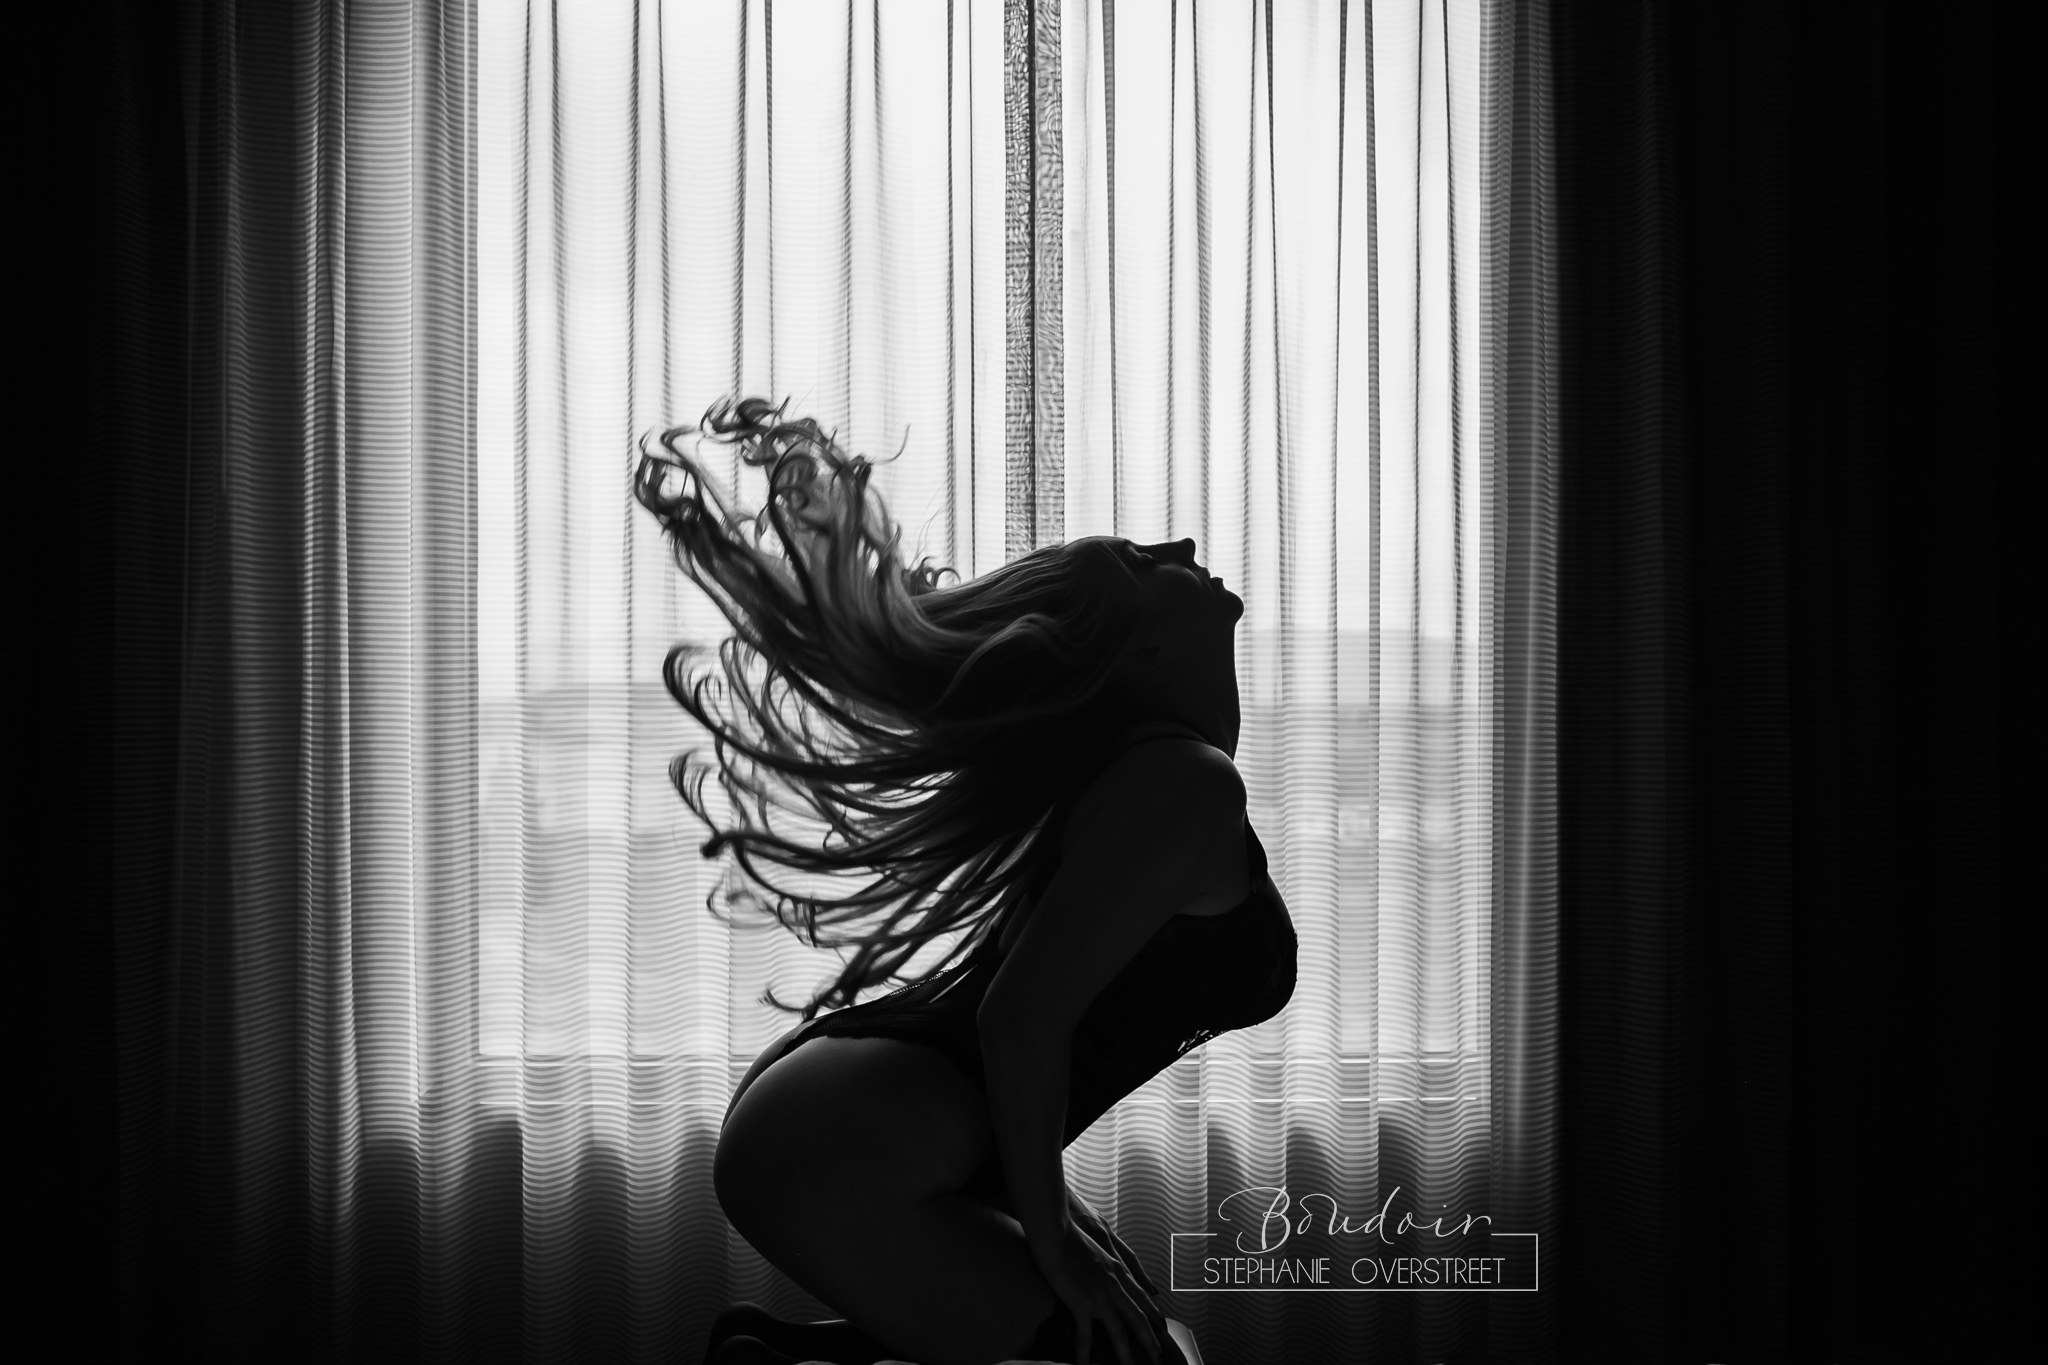 Stephanie-Overstreet-Photography-Boudoir-hairflip.jpg  by Stephanie Overstreet Photography